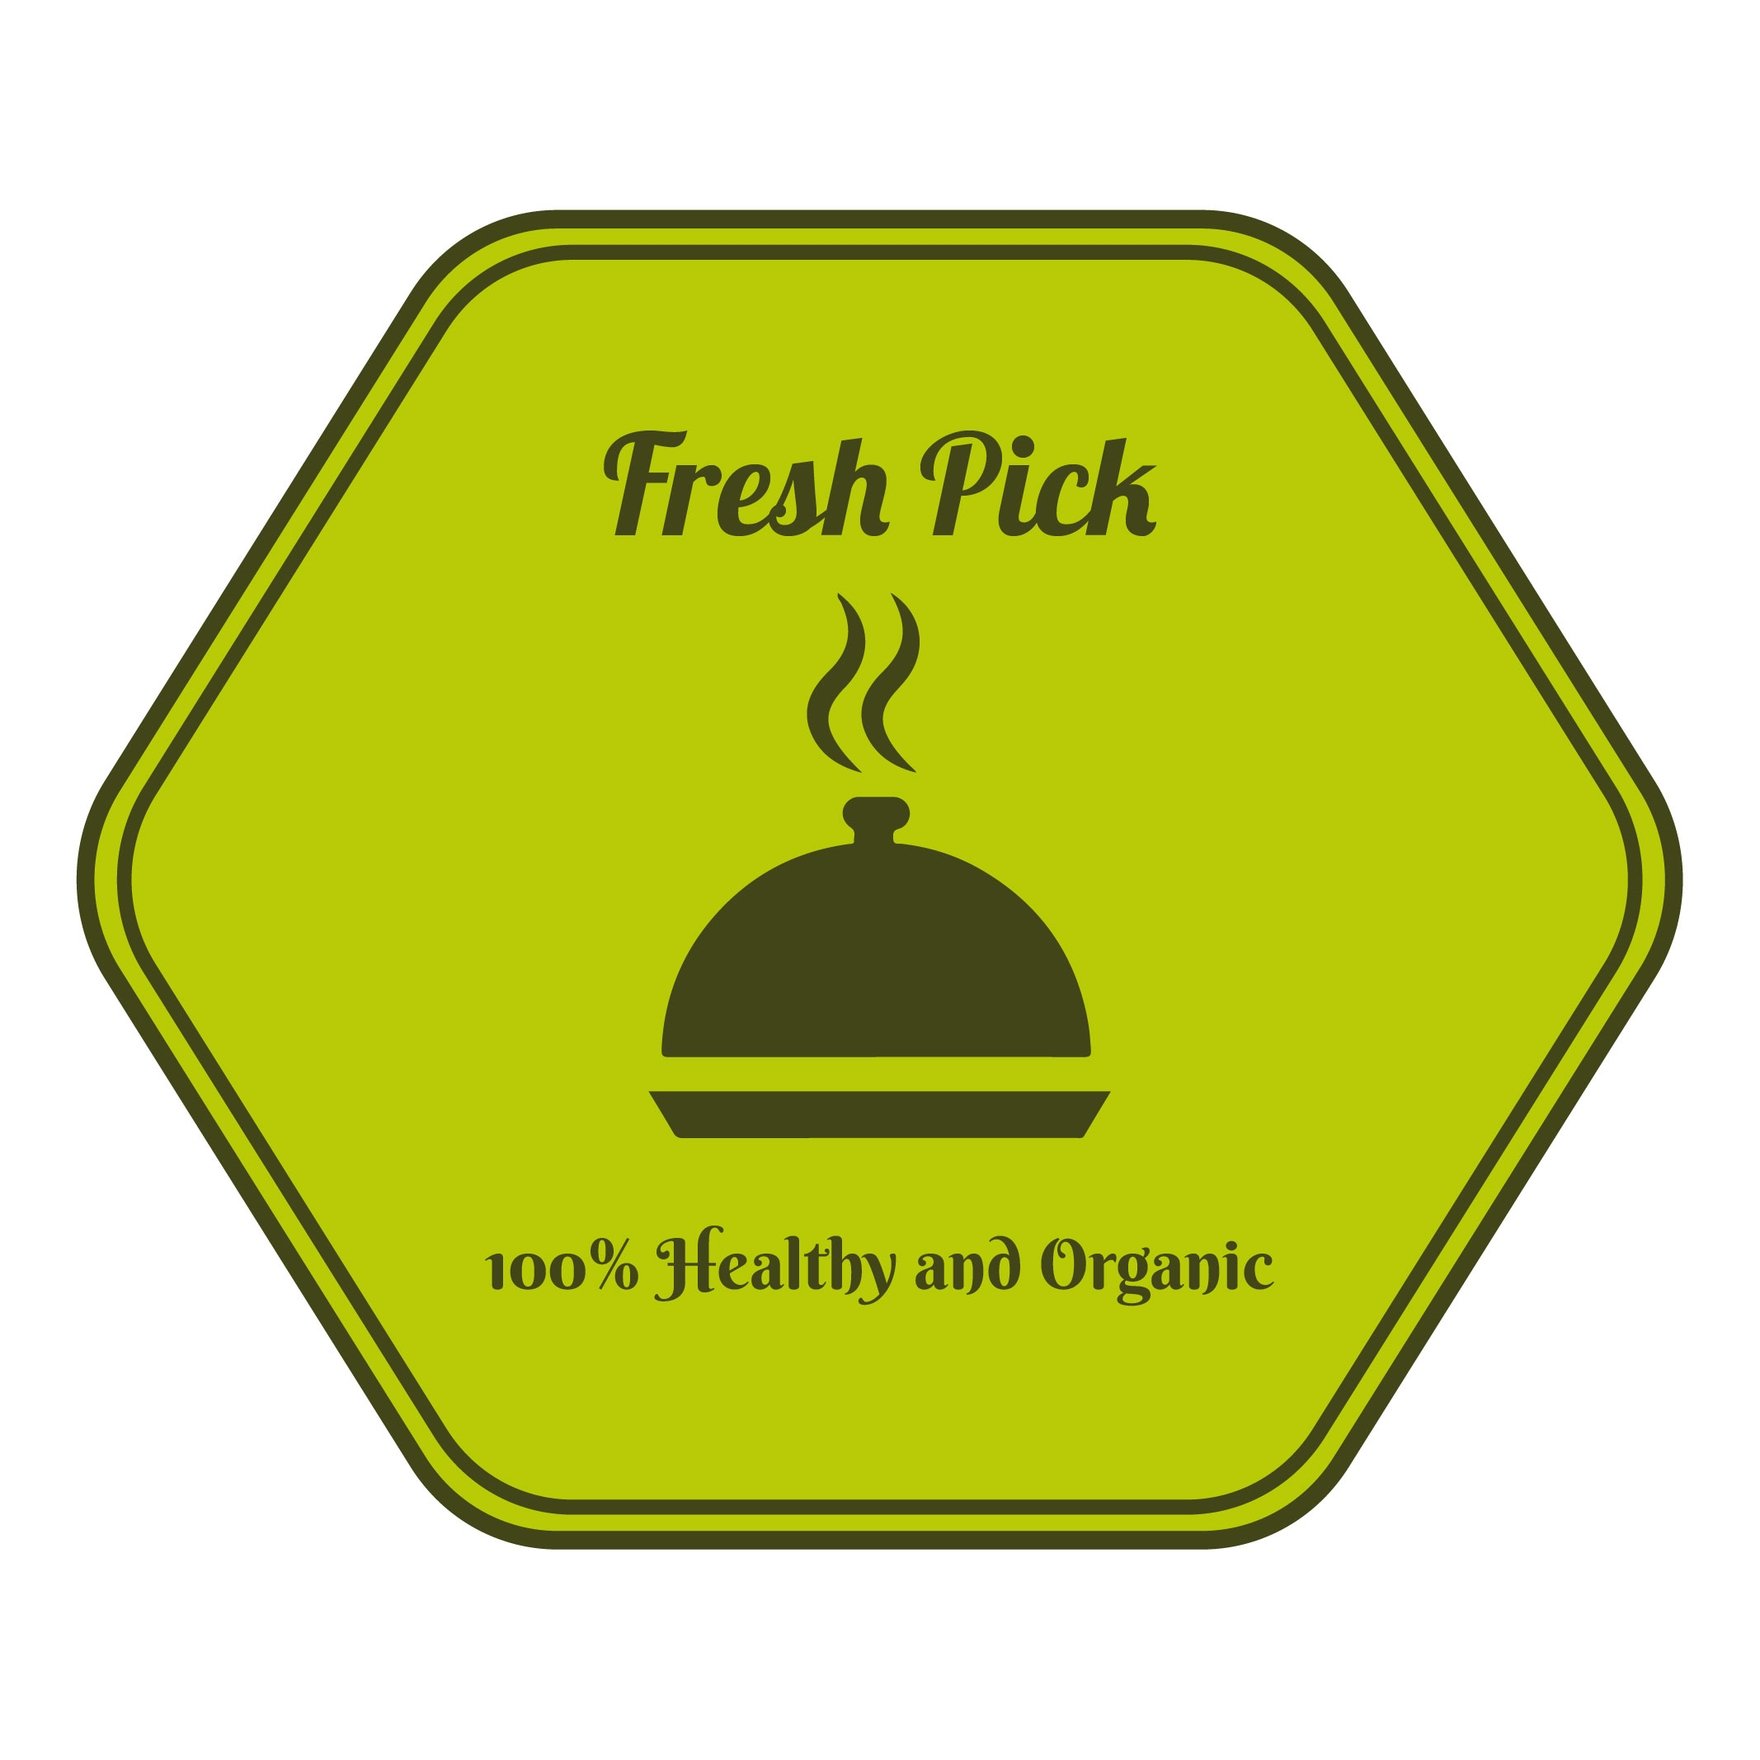 Food Badge in Illustrator, EPS, SVG, JPG, PNG